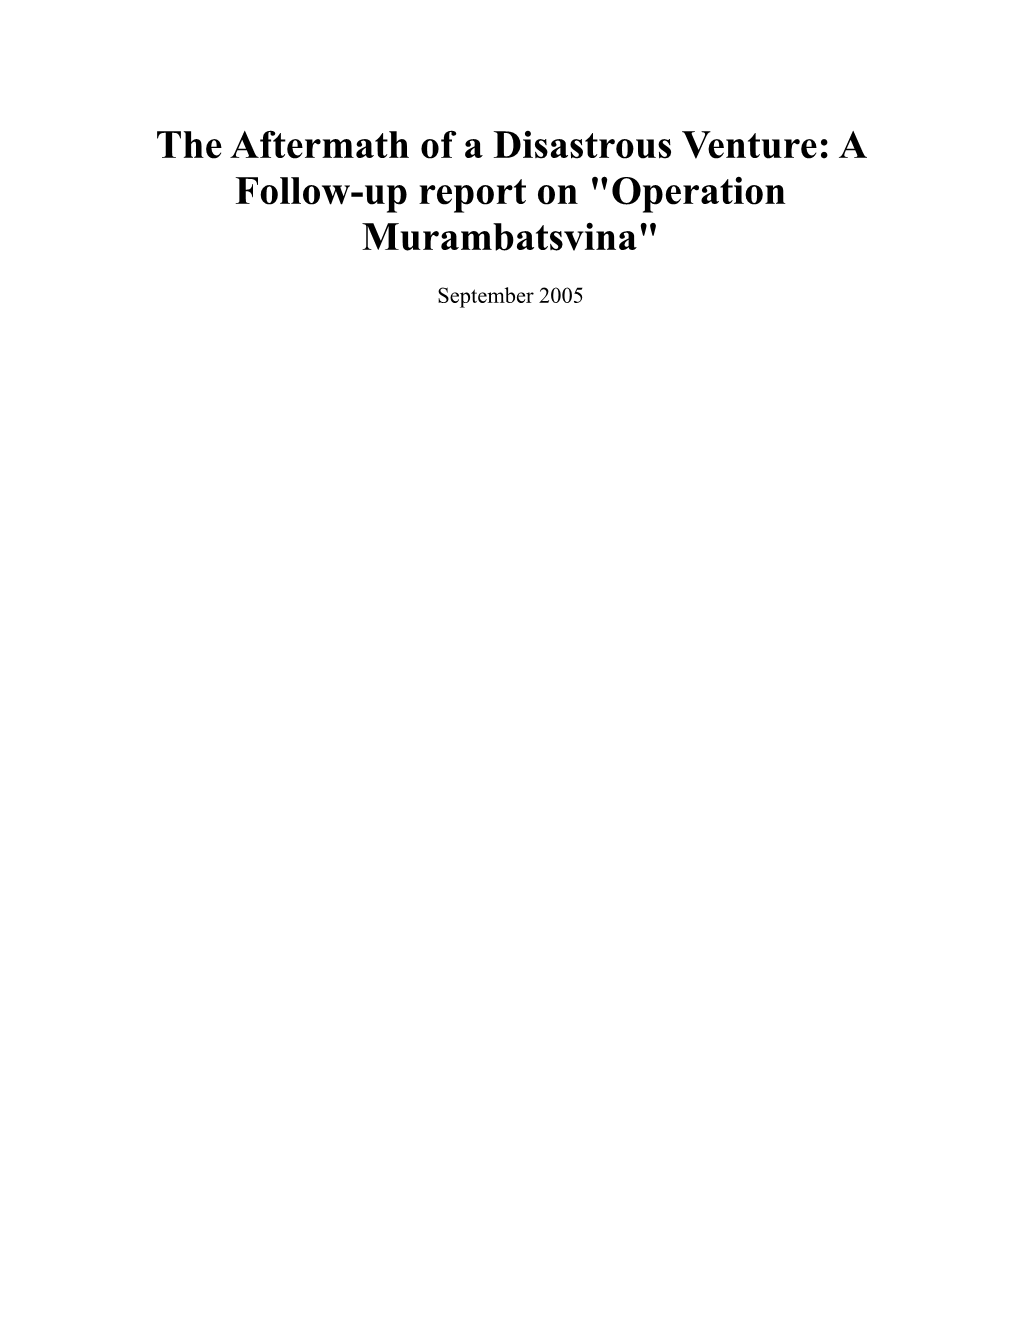 A Follow-Up Report on "Operation Murambatsvina"